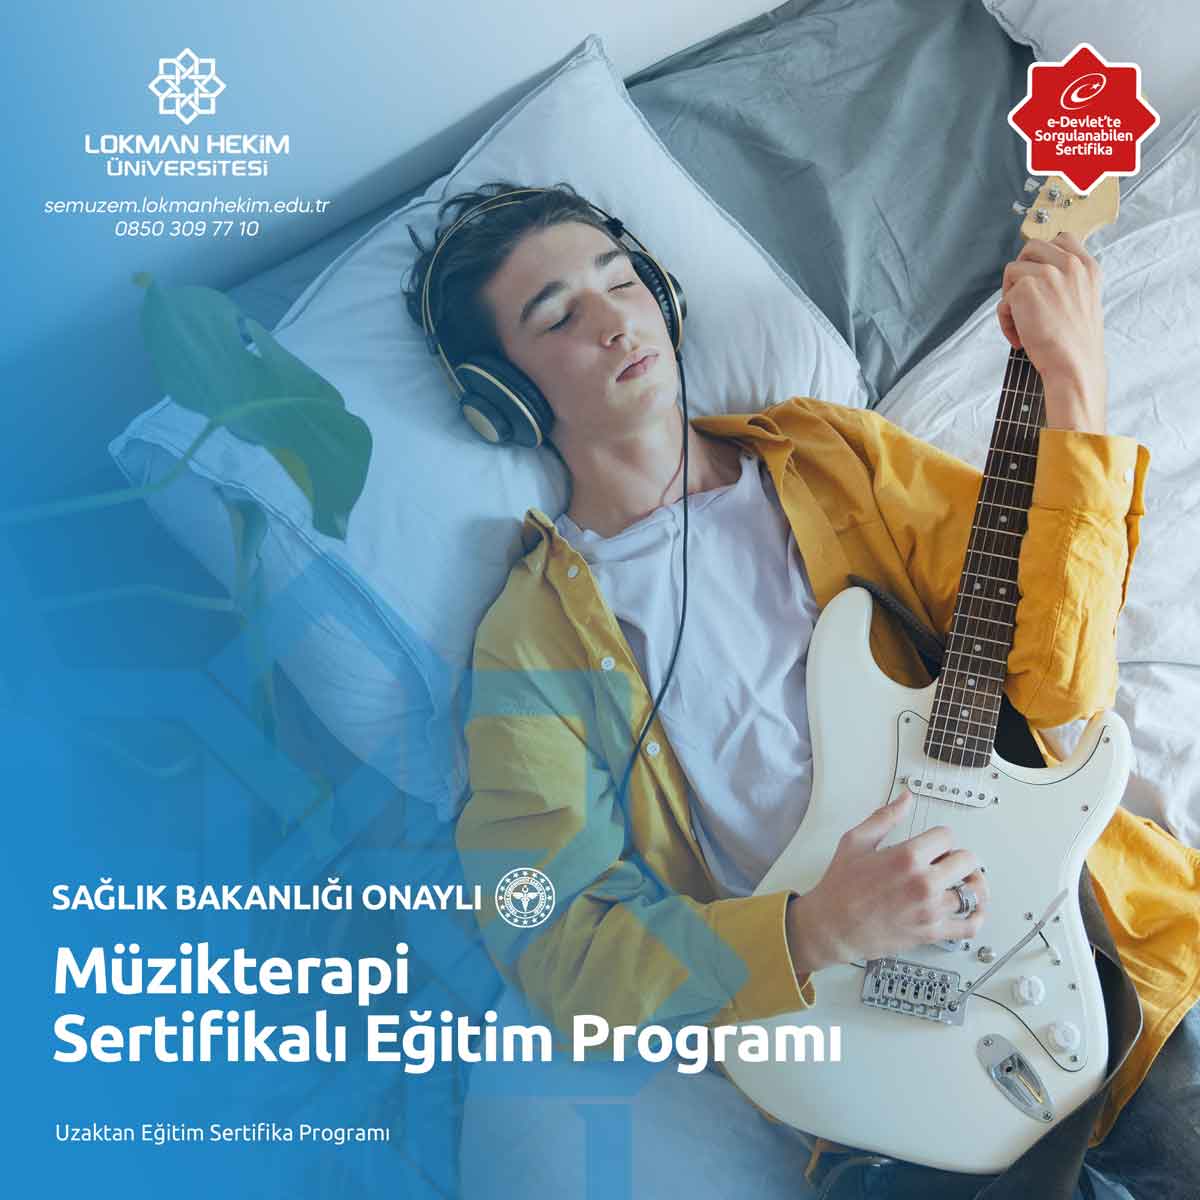 Müzikterapi Sertifikalı Eğitim Programı